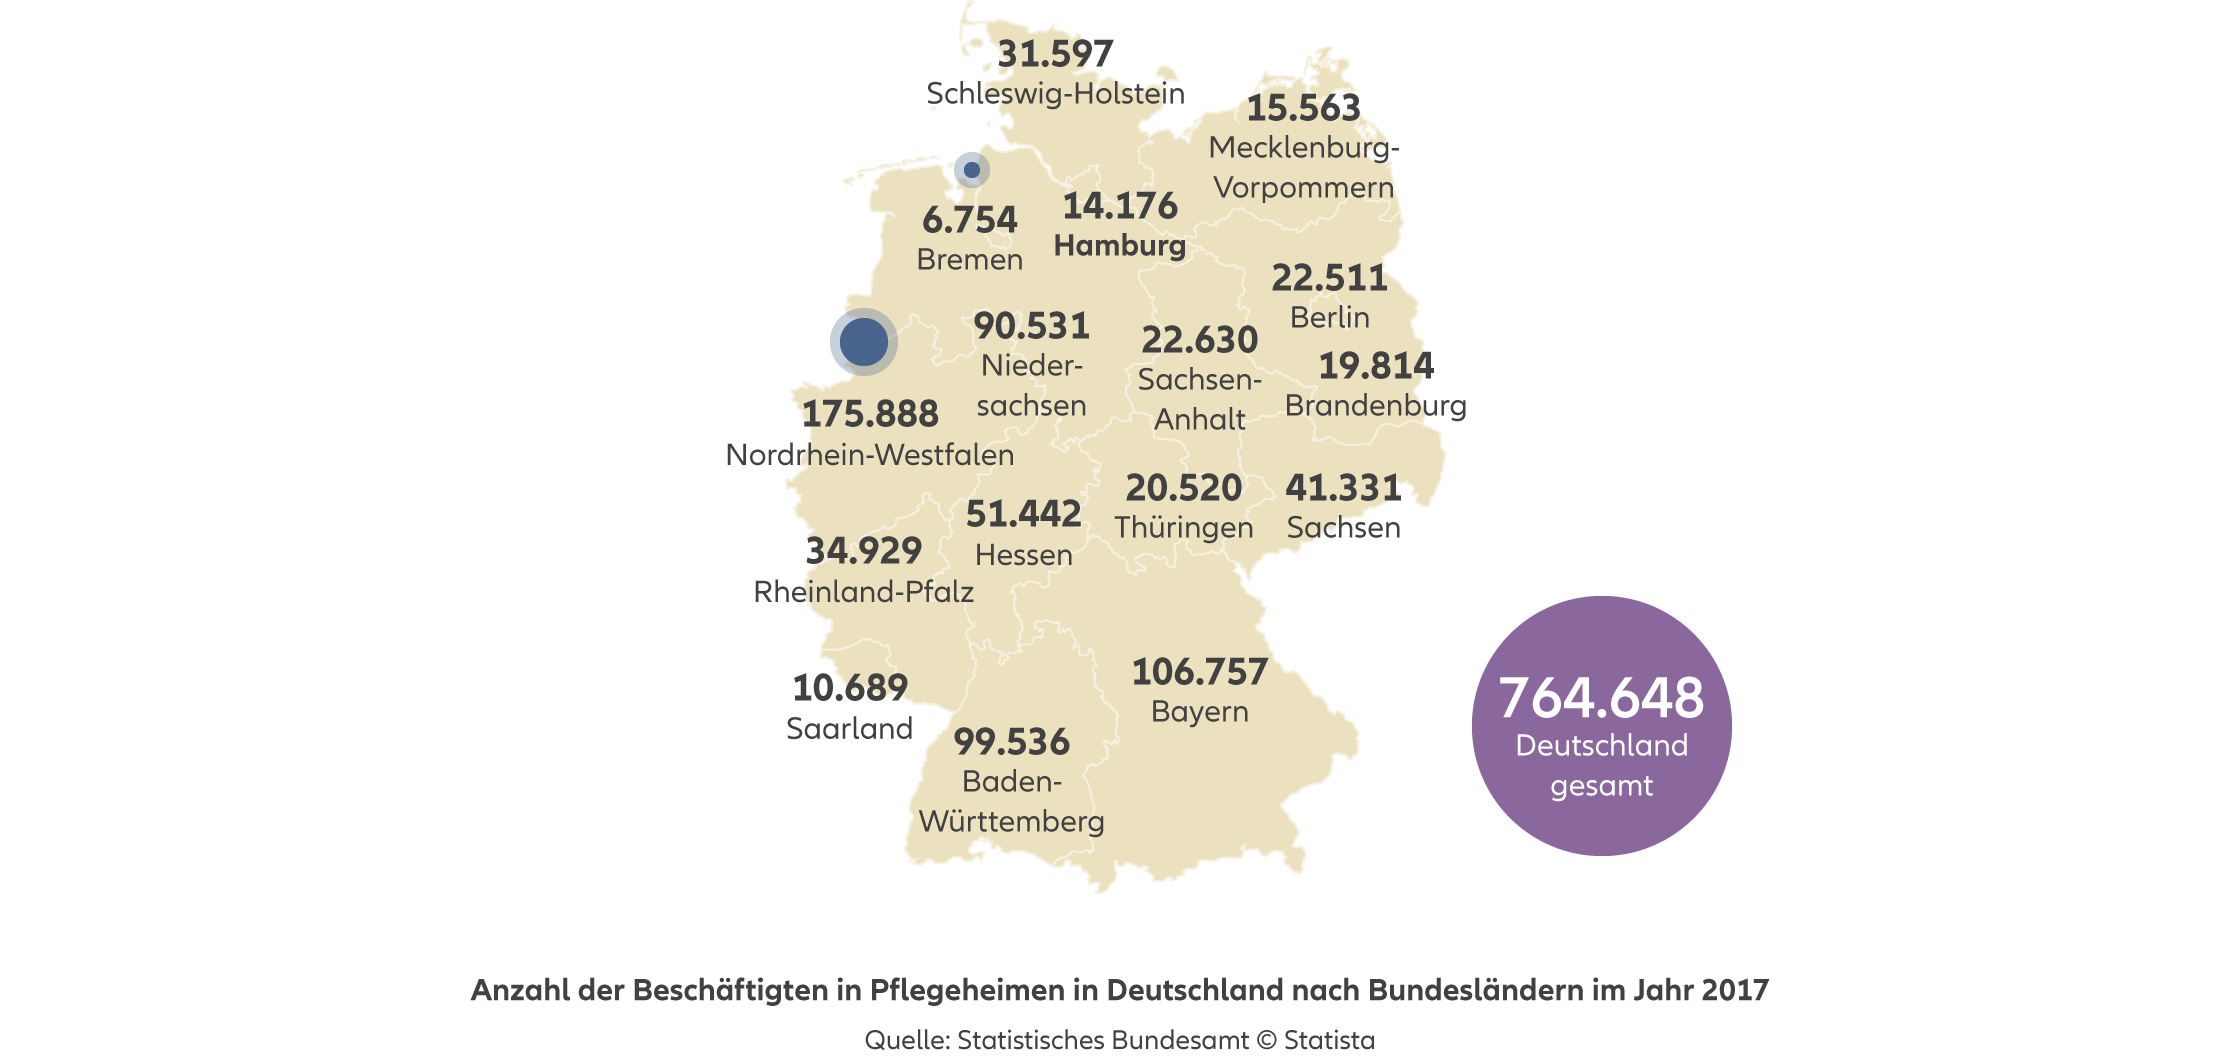 Allianz - Agentursuche Altersvorsorge Hamburg - Infografik: Anzahl der Beschäftigten in Pflegeheimen in Deutschland nach Bundesländern im Jahr 2017